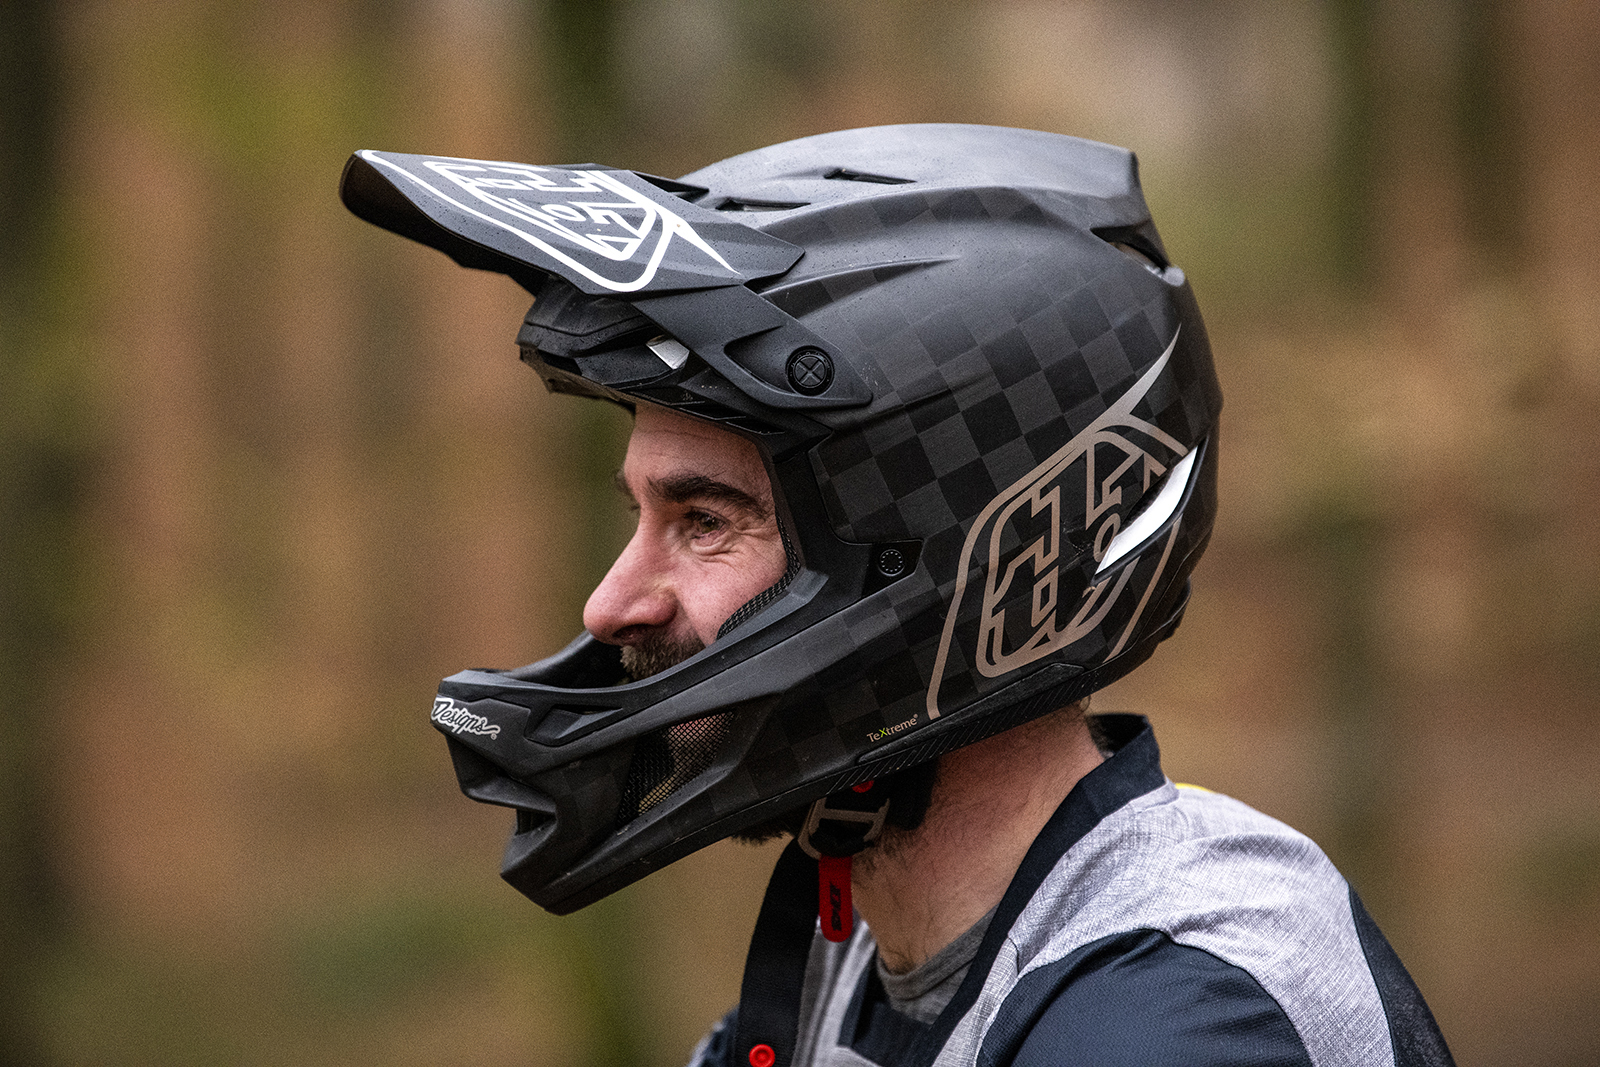 Troy Lee Designs D4 helmet review - BikeRadar